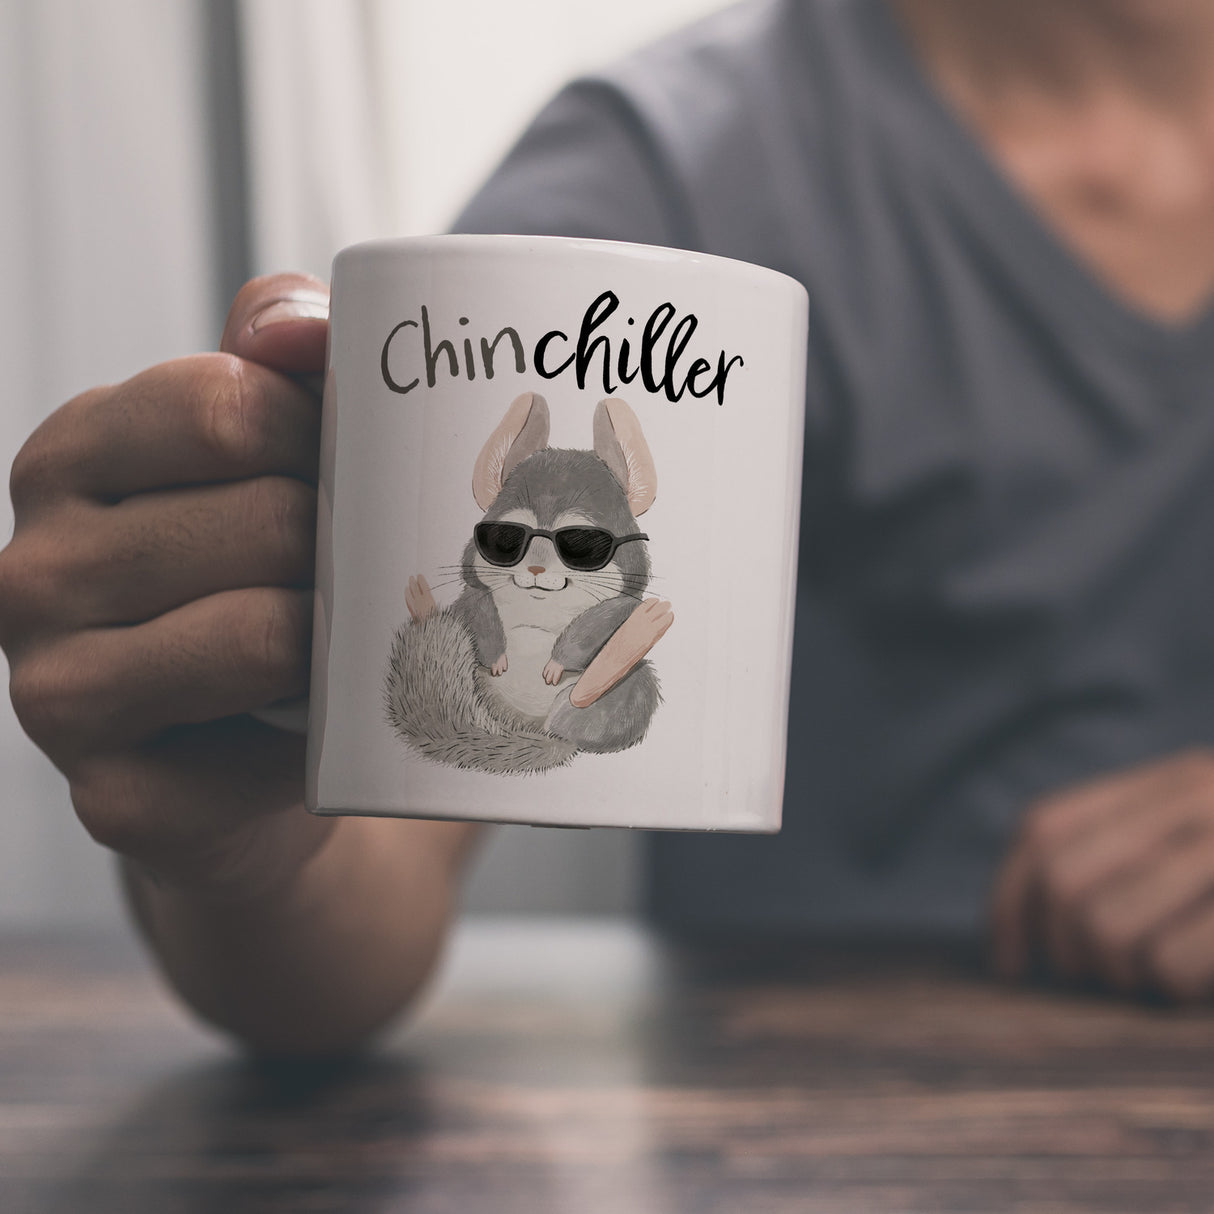 Chinchilla Kaffeebecher mit Spruch Chinchiller